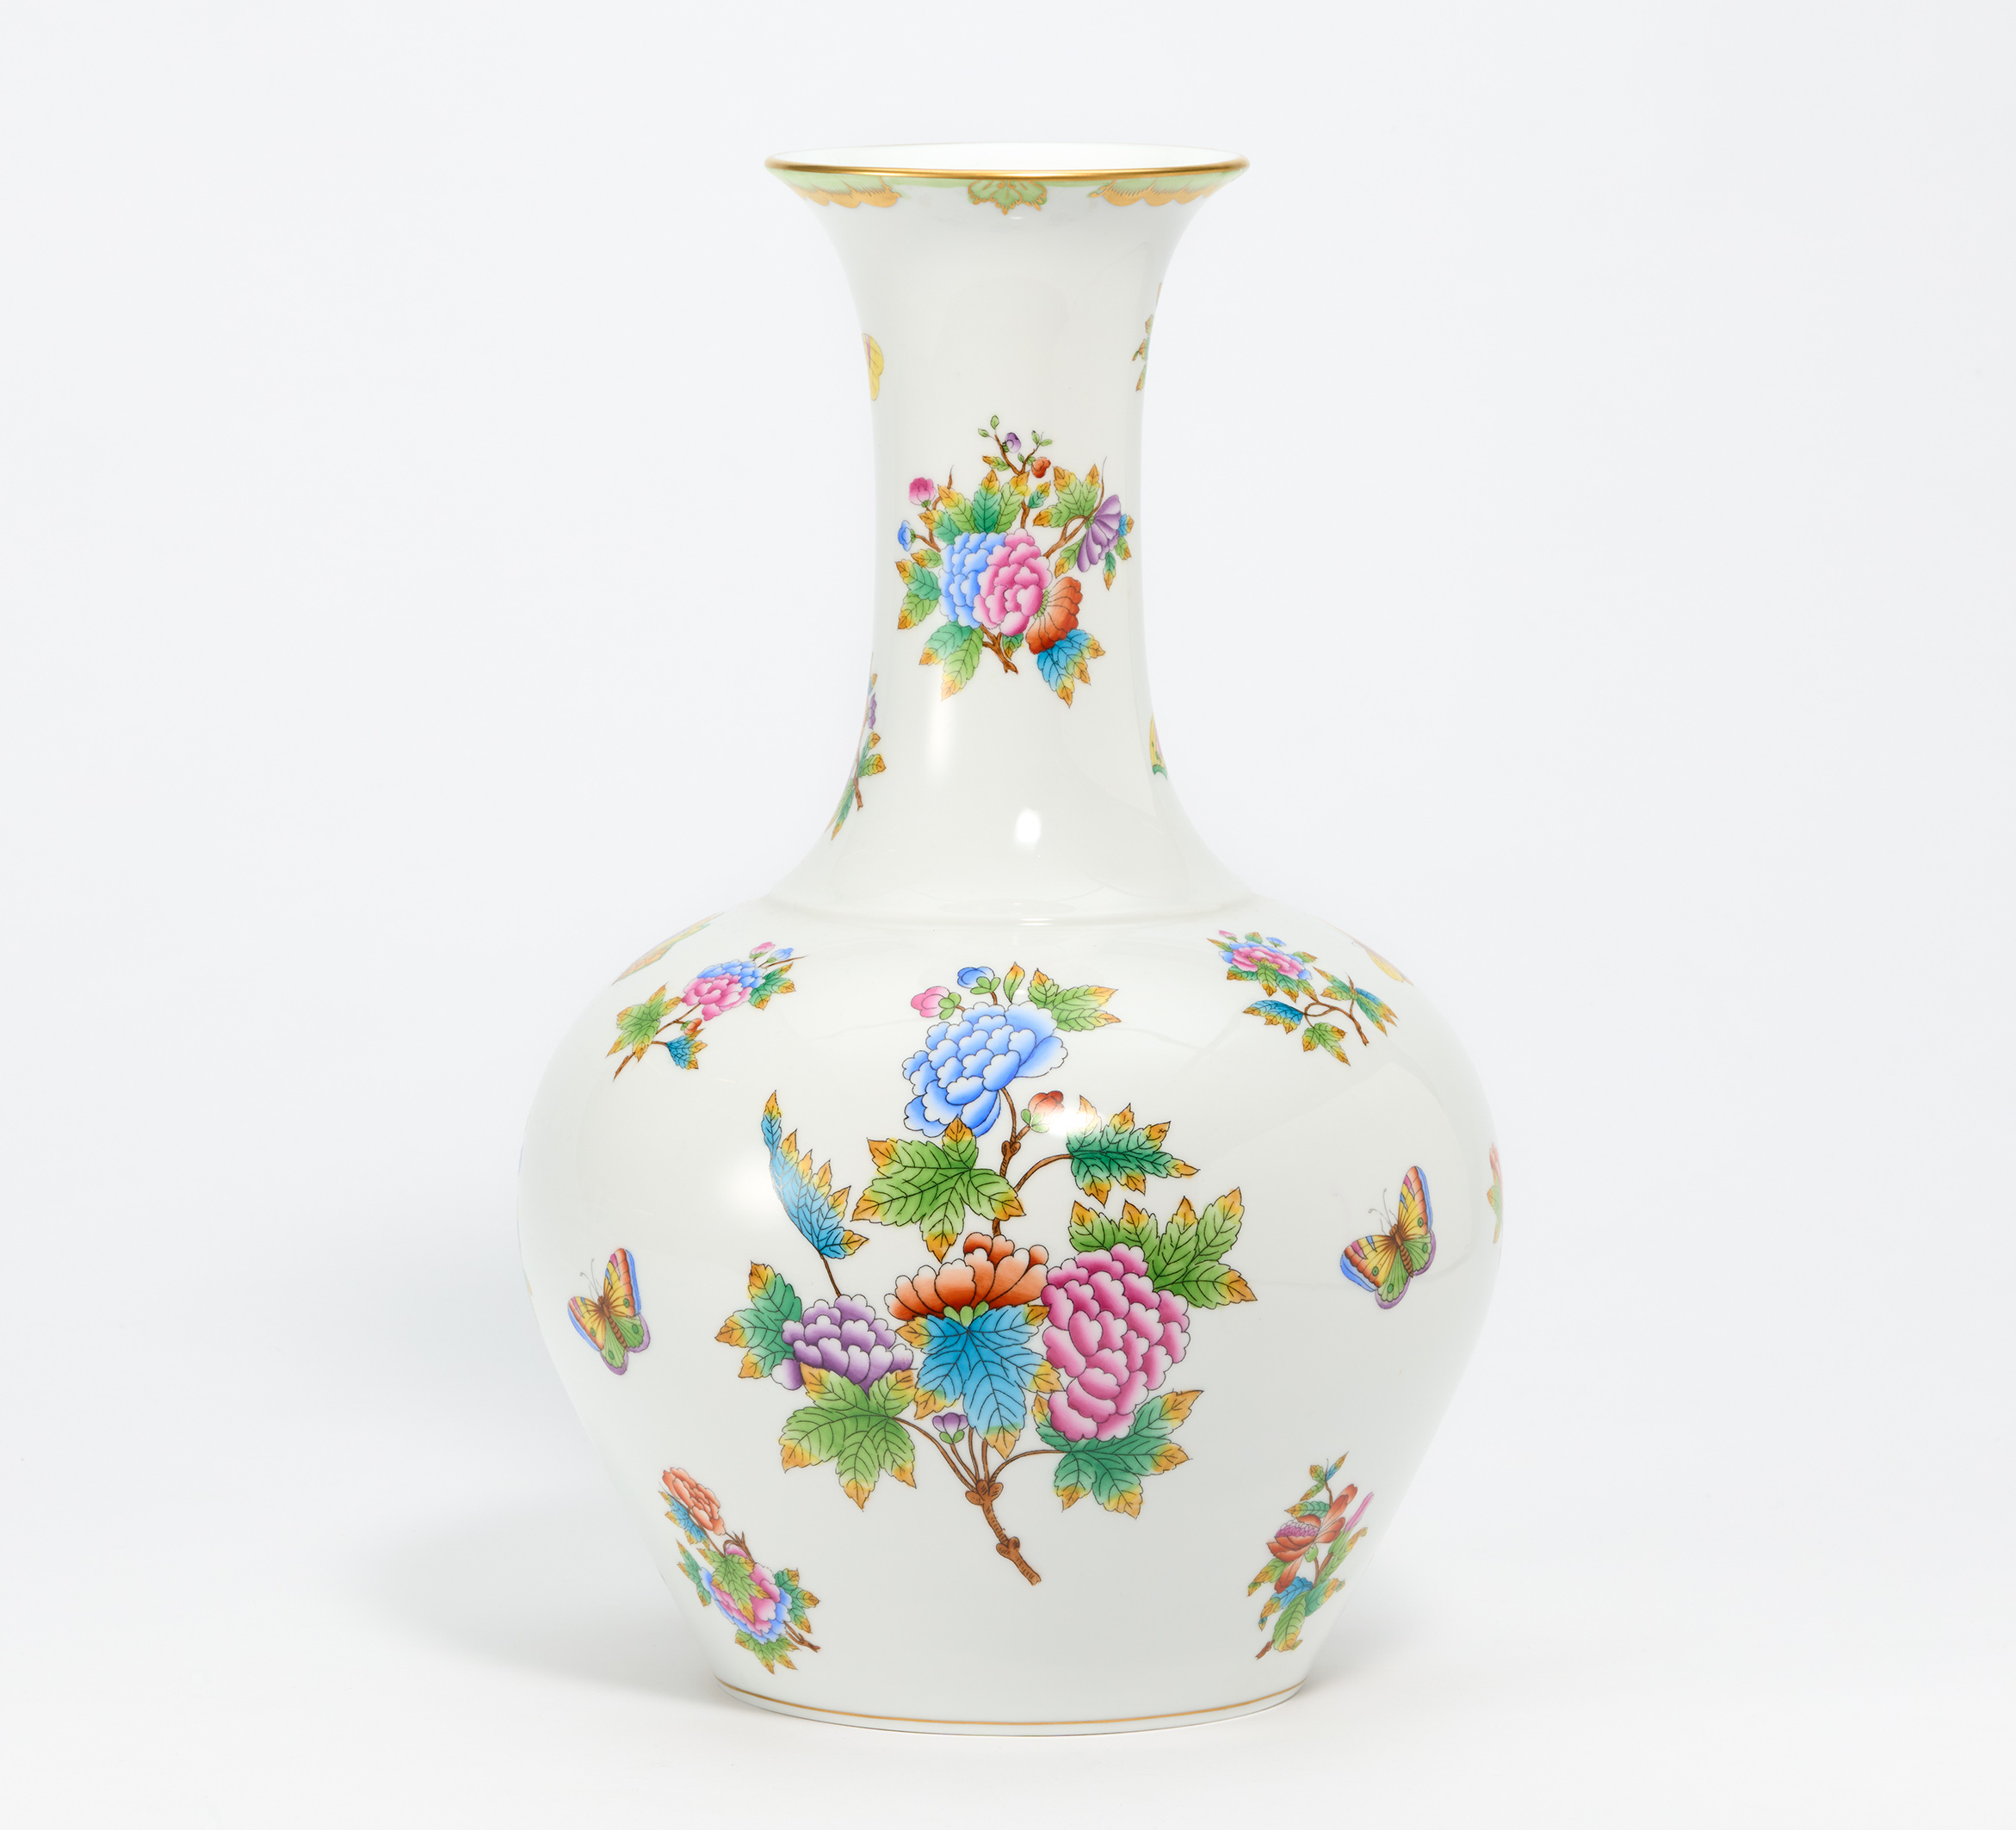 Herend - Grosse Vase mit Blumen- und Schmetterlingsdekor, 73295-52, Van Ham Kunstauktionen